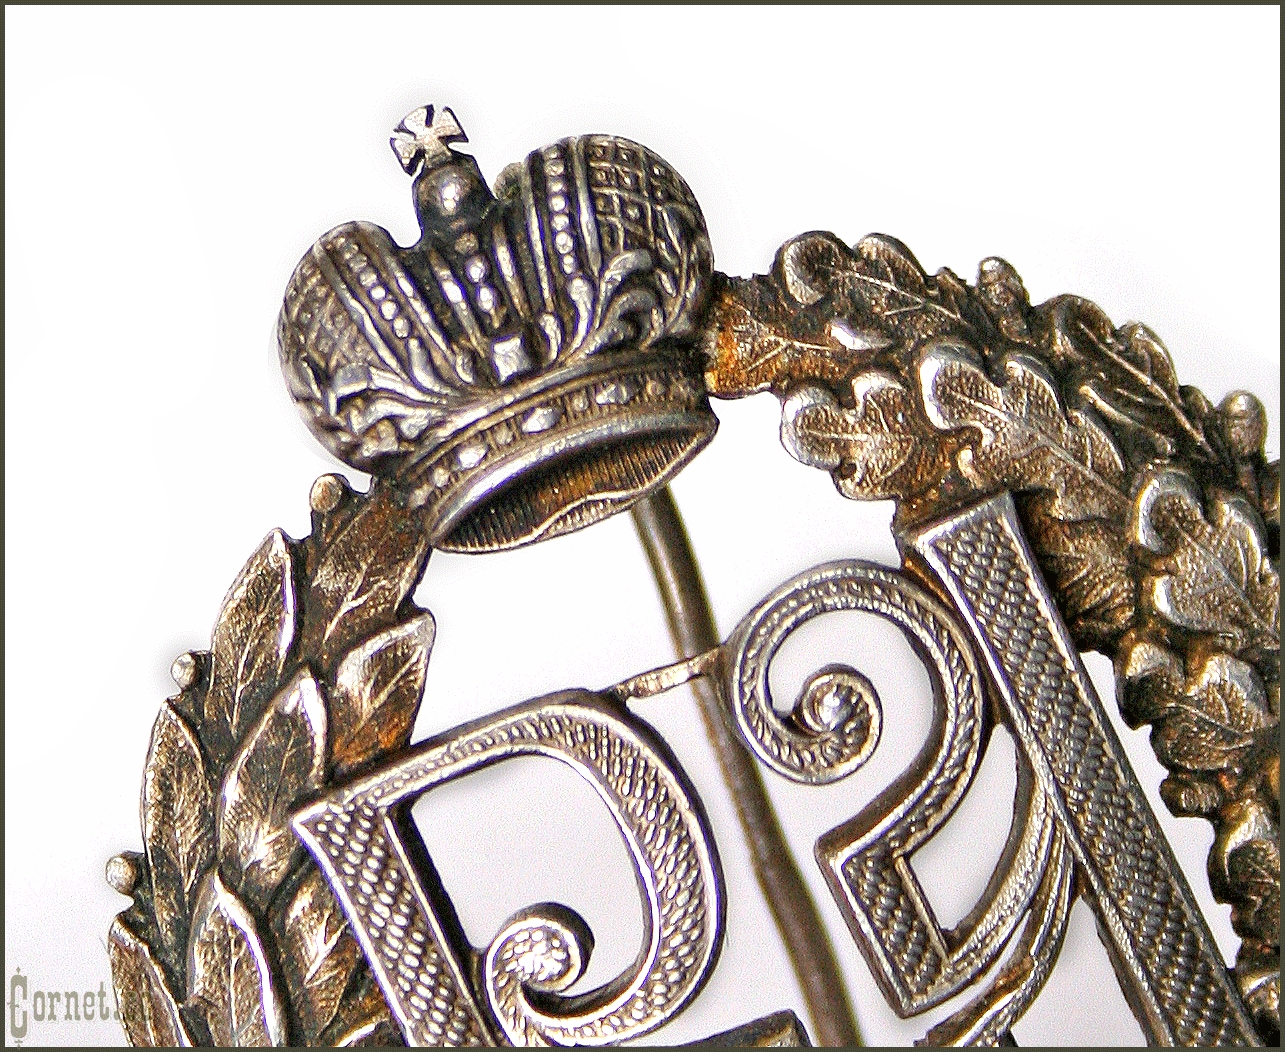 Знак членов Военно-санитарных организаций Императорского Российского Пожарного Общества